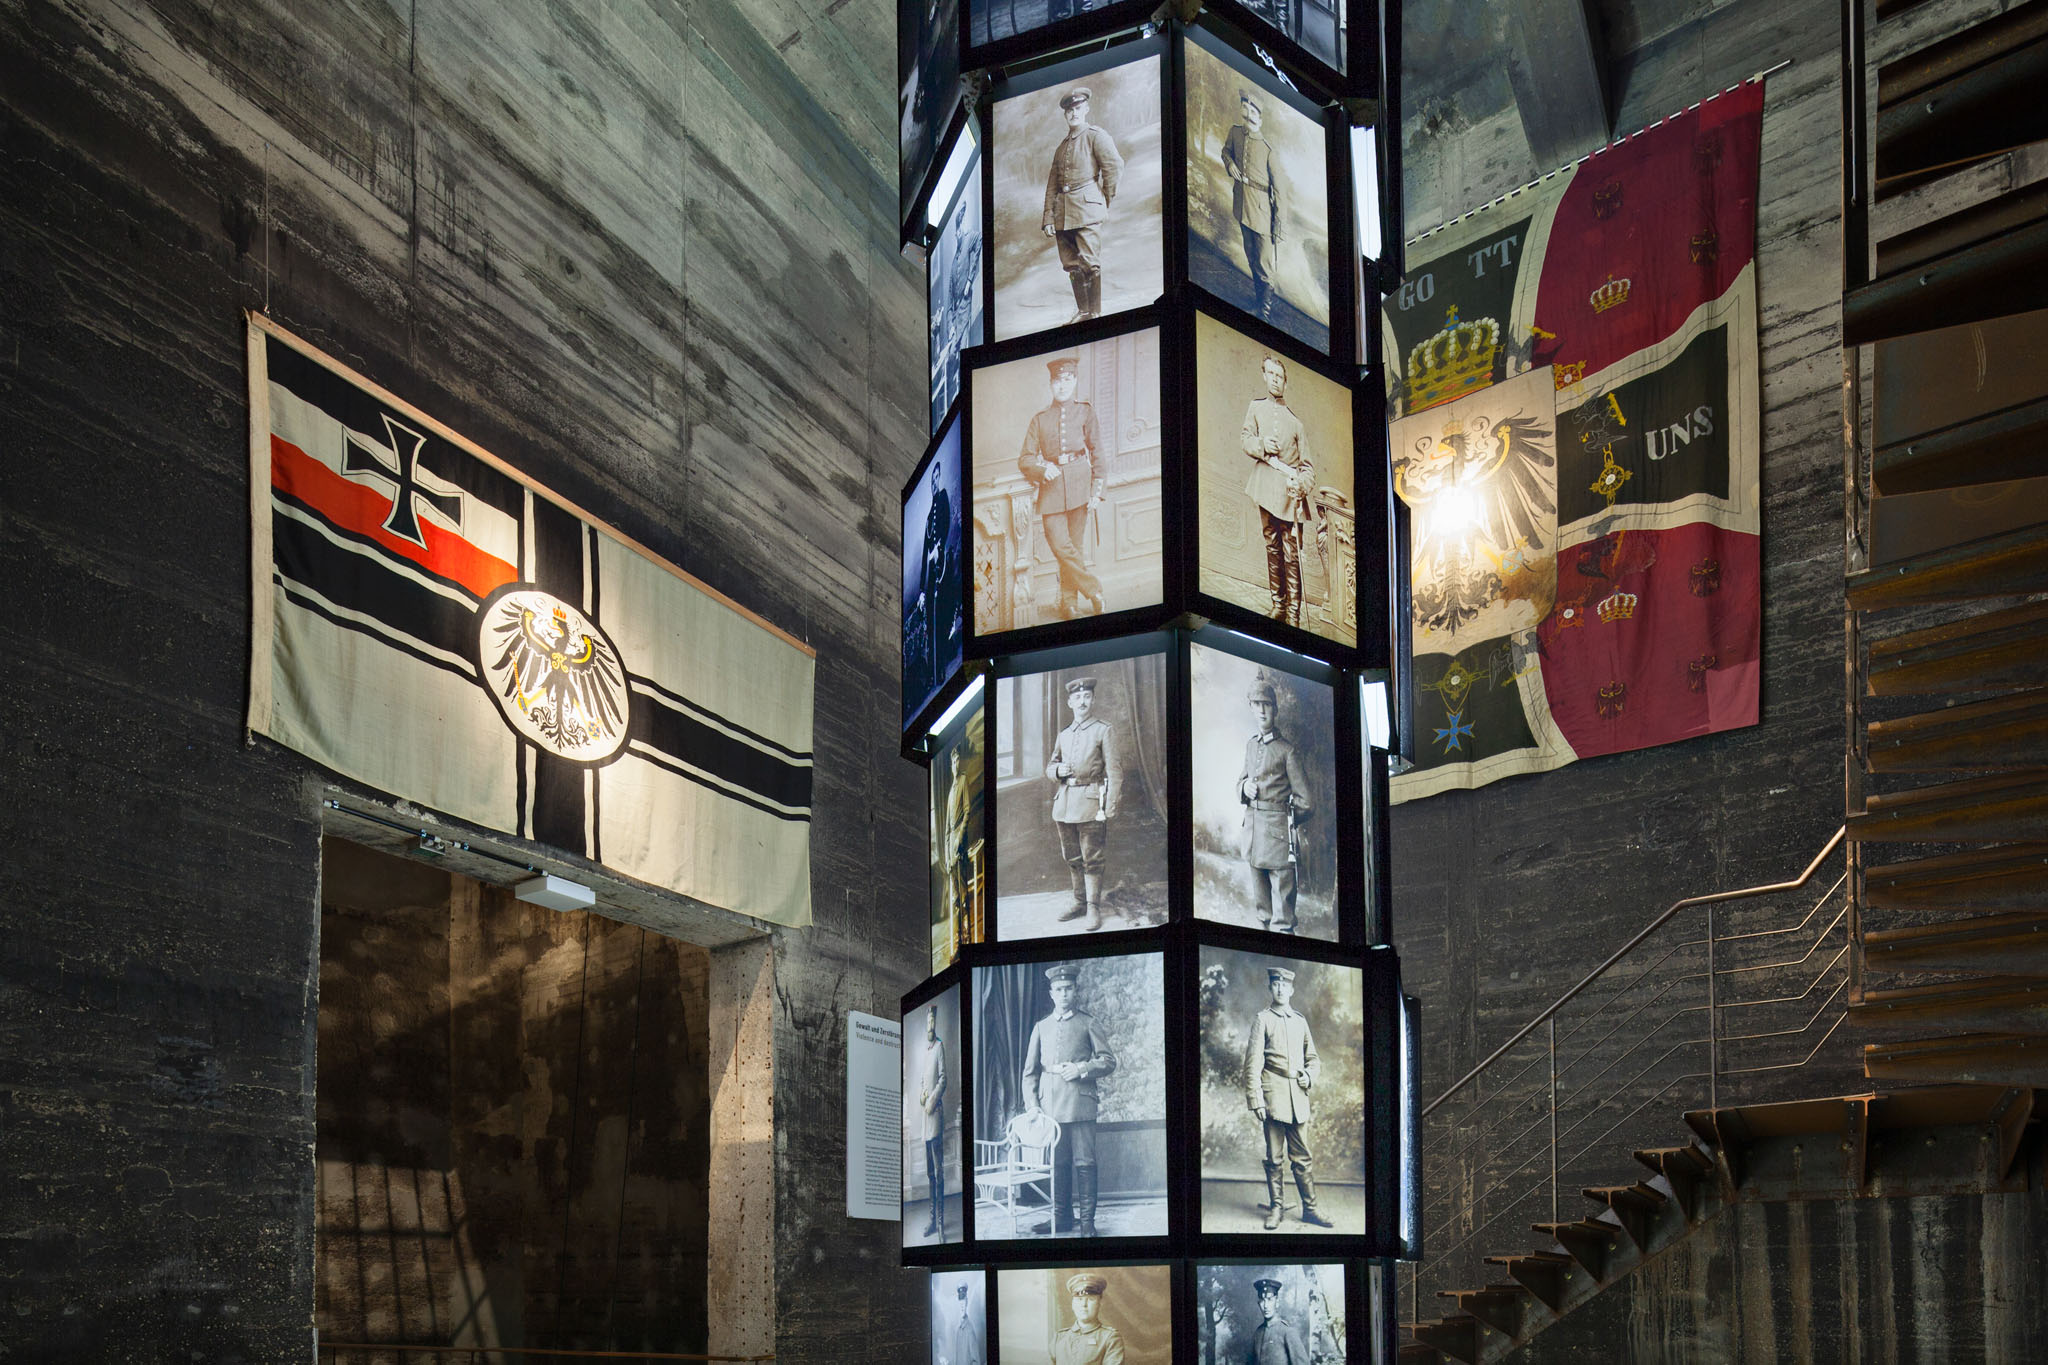 Kokerei Zollverein, "1914 - Mitten in Europa"